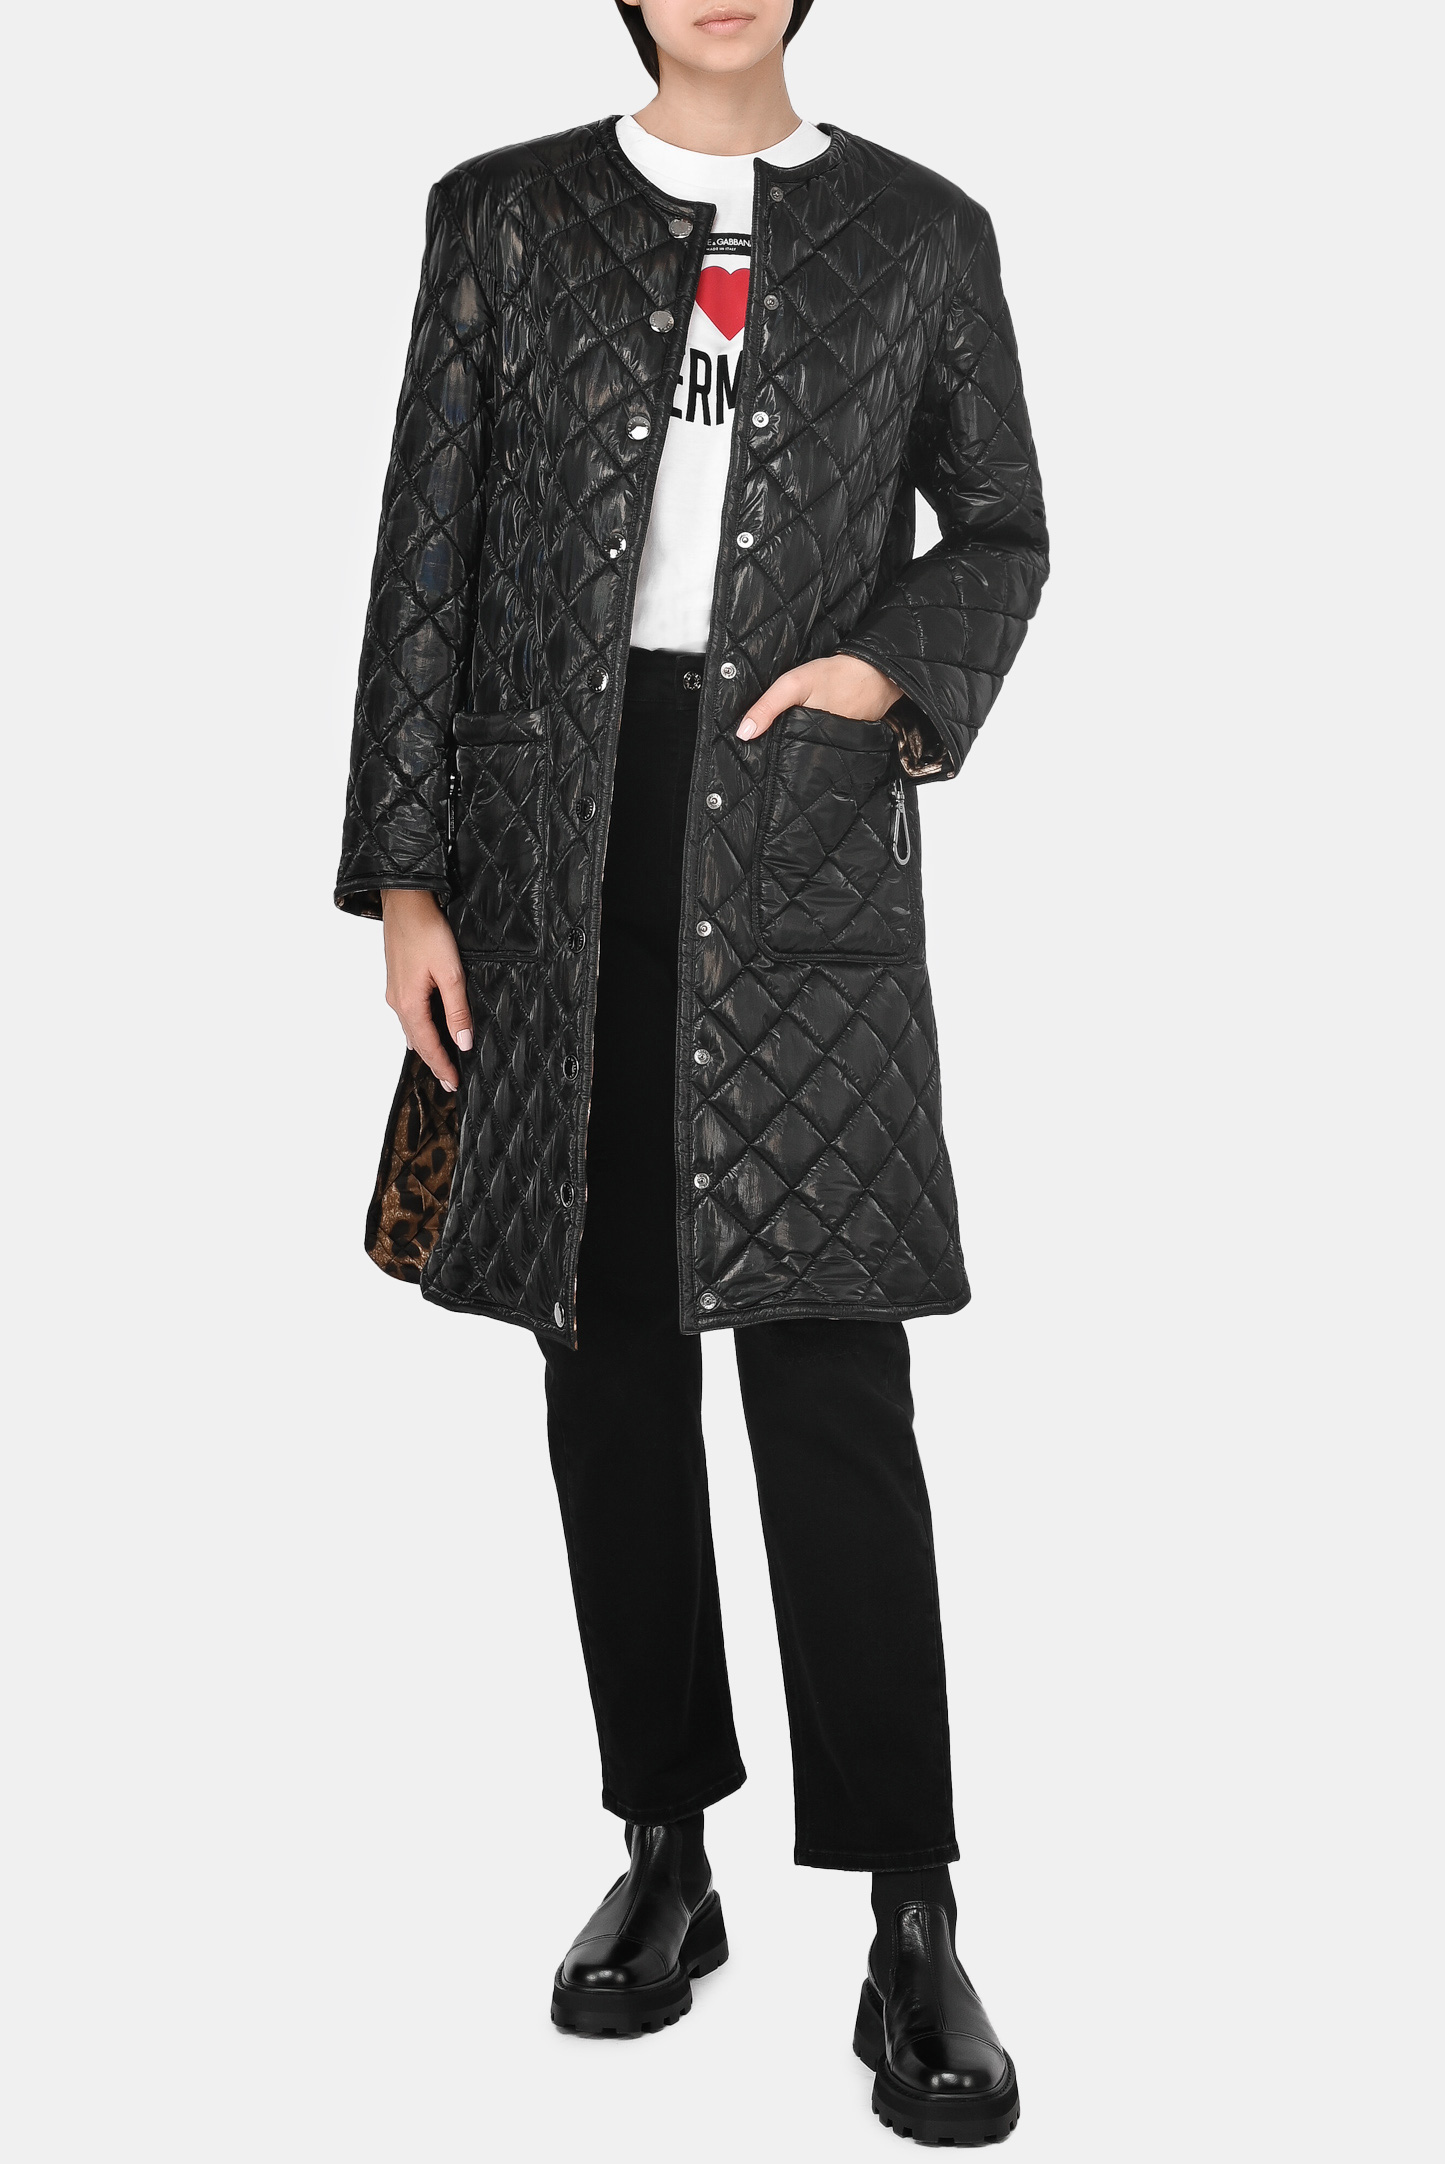 Куртка DOLCE & GABBANA F0AR5T FUSOH, цвет: Черный, Женский